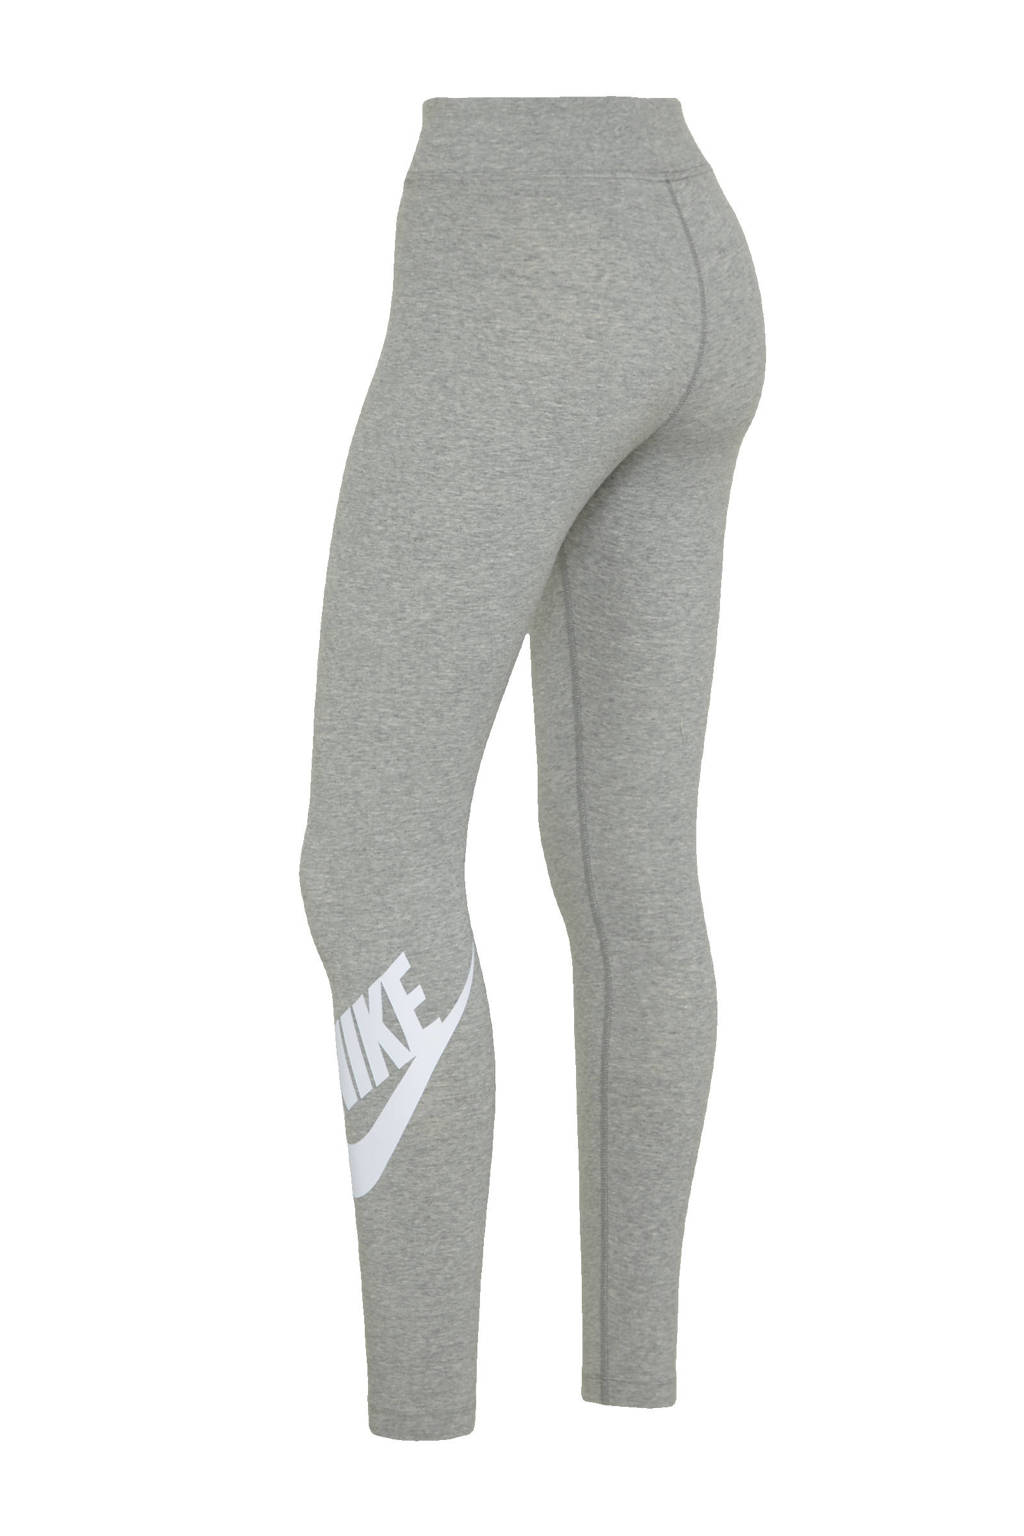 waarom aanval gek geworden Nike legging grijs/wit | wehkamp